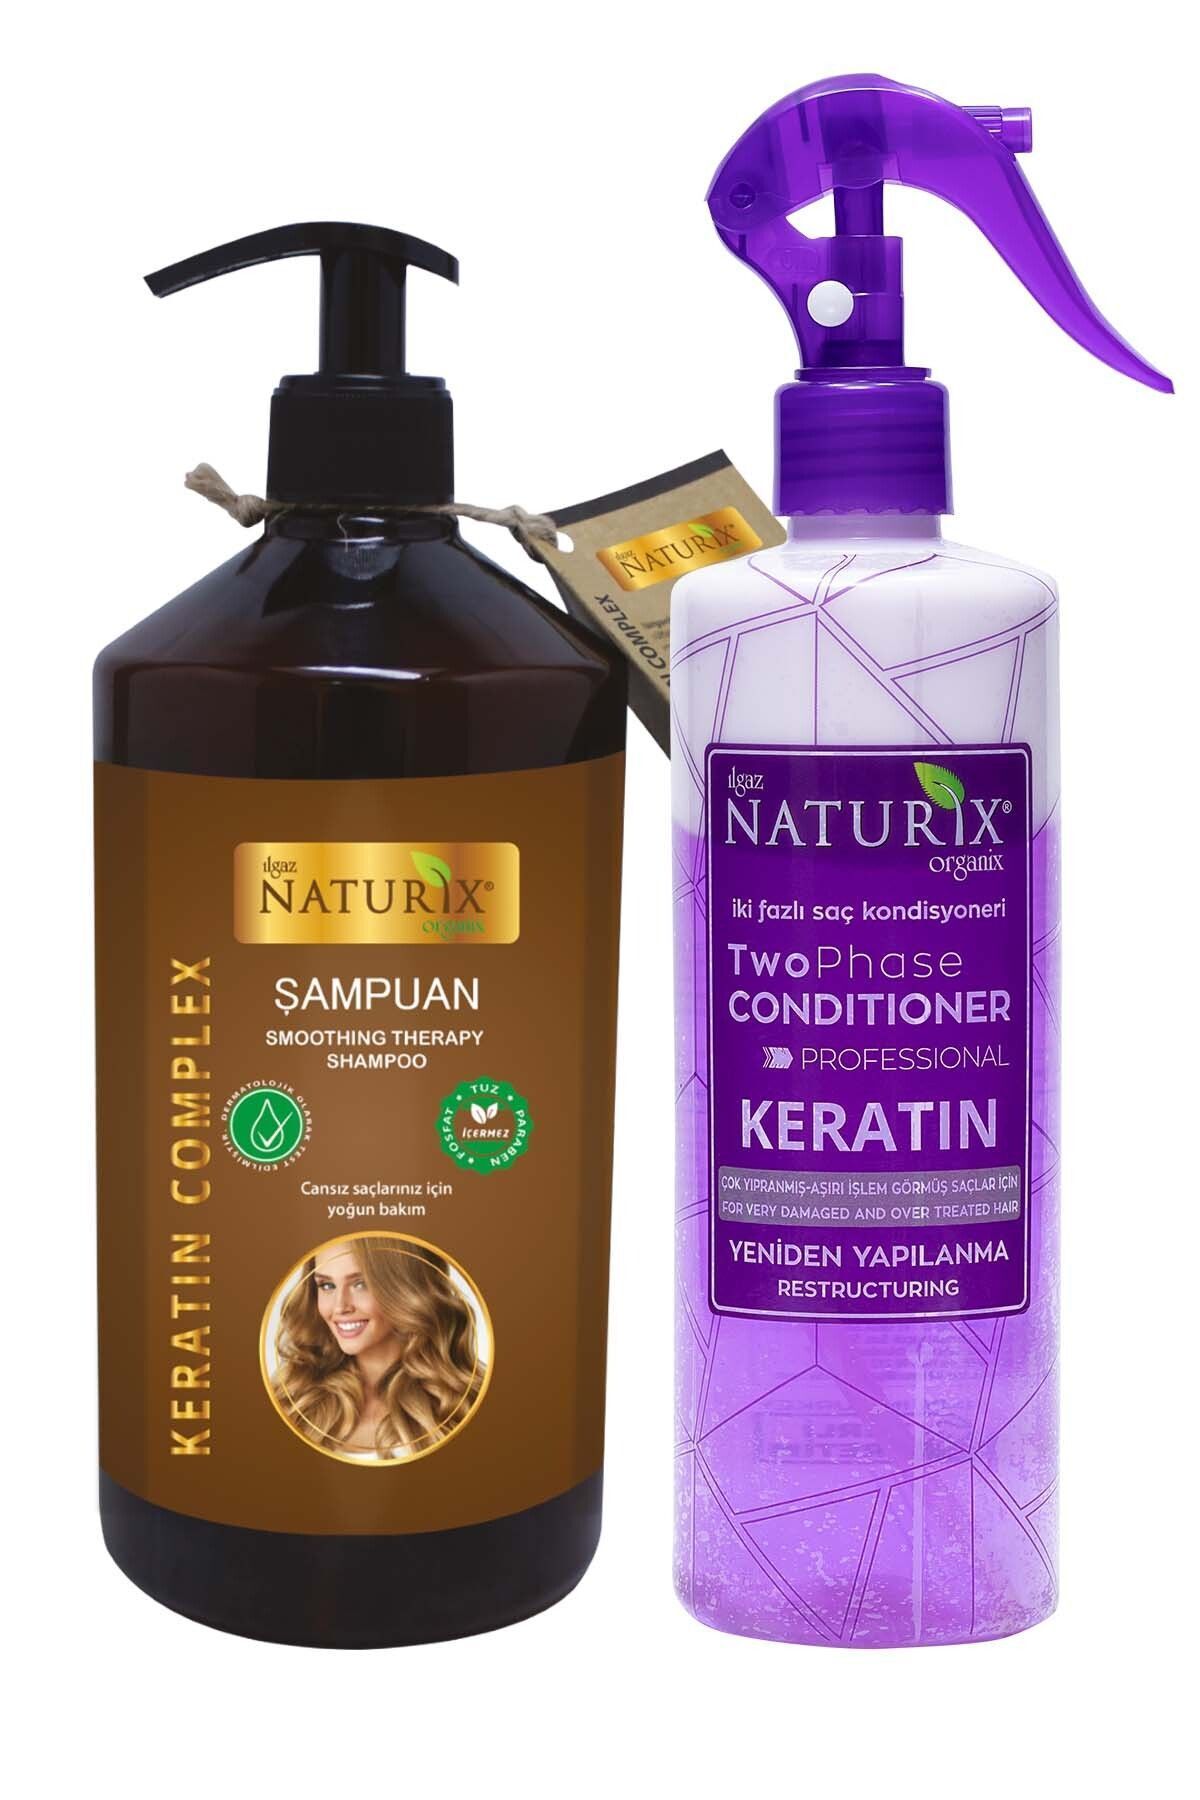 Ilgaz Naturix Organix Tuzsuz Keratinli Şampuanı 600ml Kırık Saç Uçları İçin Keratin Bakım Sıvı Saç Kremi Durulanmaz Krem